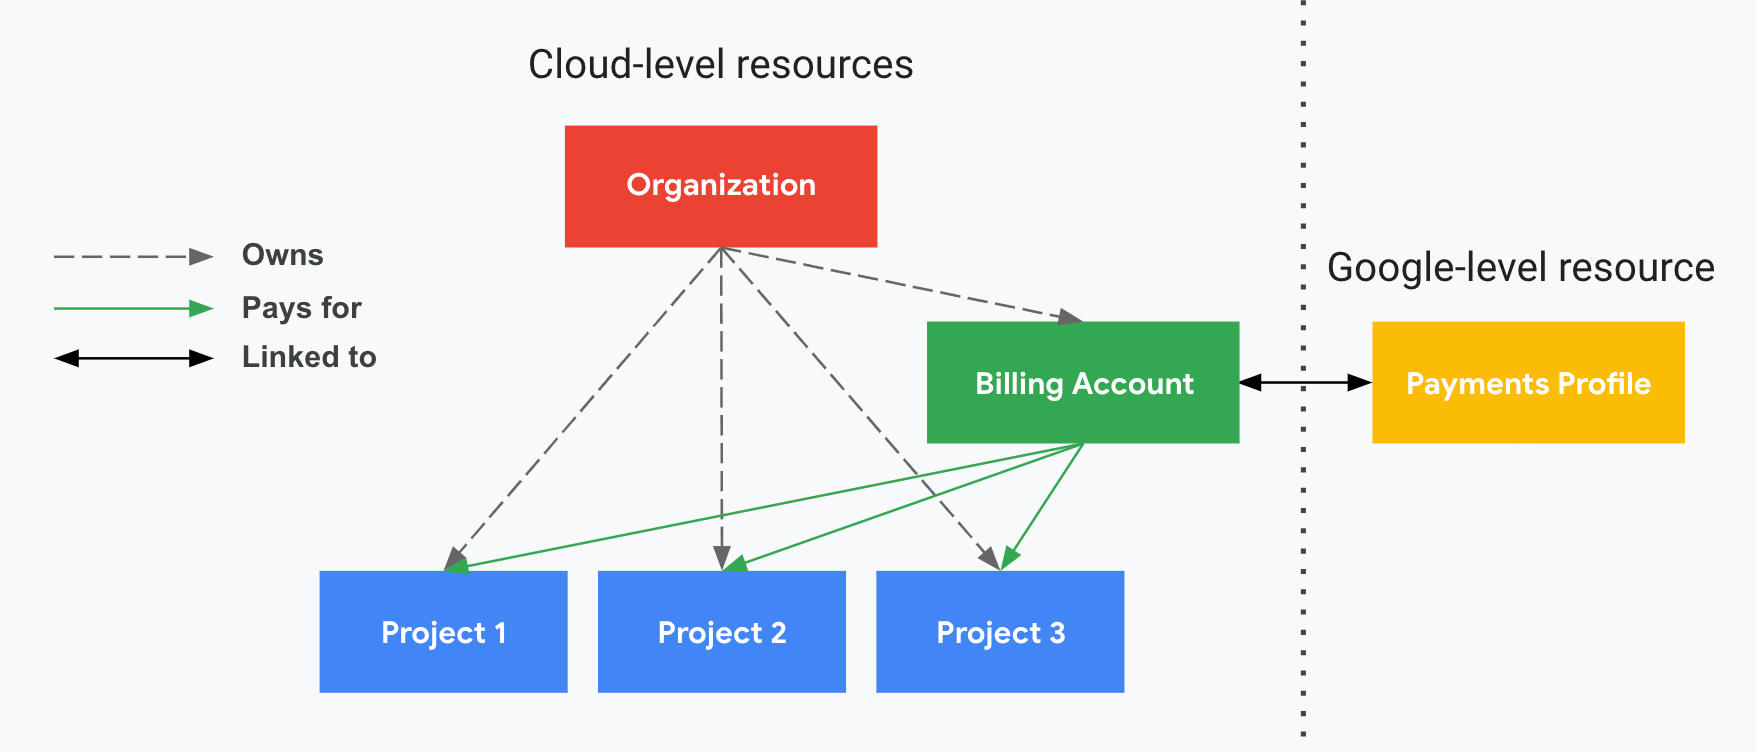 Describe cómo se relacionan los proyectos con la cuenta de facturación de Cloud, la organización y el perfil de pagos. Una parte muestra los recursos a nivel de Cloud (la organización, la cuenta de facturación de Cloud y los proyectos asociados) y la otra, dividida por una línea de puntos vertical, muestra el recurso a nivel de Google (un perfil de pagos). Los proyectos se pagan con la cuenta de facturación de Cloud vinculada al perfil de pagos. La organización controla la propiedad mediante IAM.